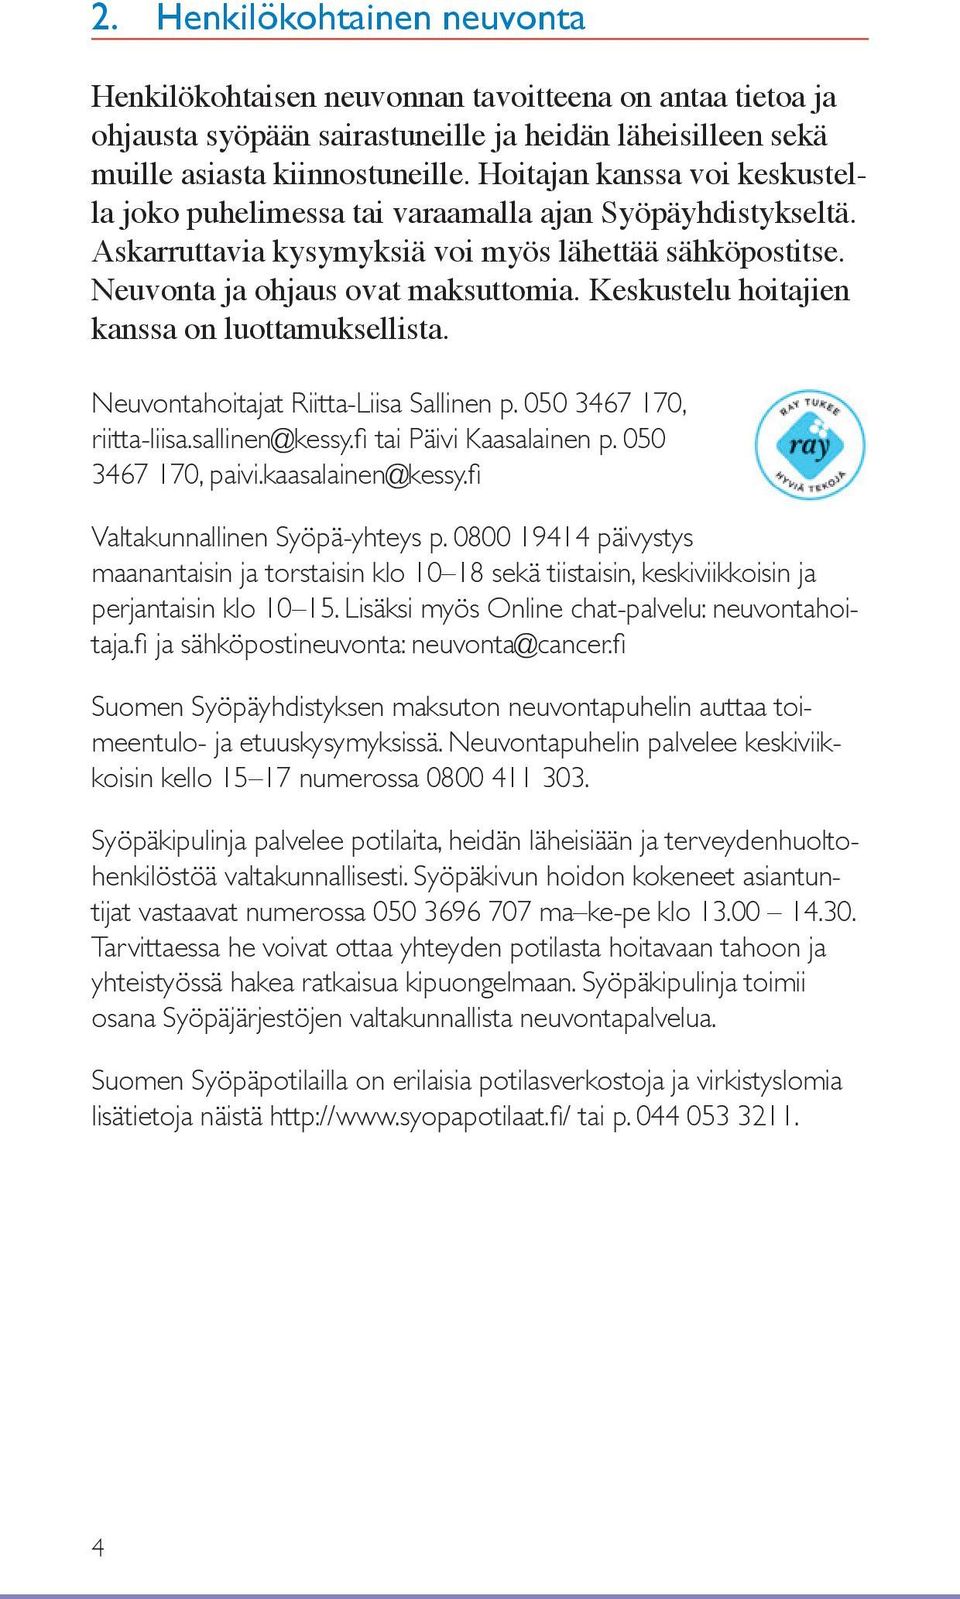 Keskustelu hoitajien kanssa on luottamuksellista. Neuvontahoitajat Riitta-Liisa Sallinen p. 050 3467 170, riitta-liisa.sallinen@kessy.fi tai Päivi Kaasalainen p. 050 3467 170, paivi.kaasalainen@kessy.